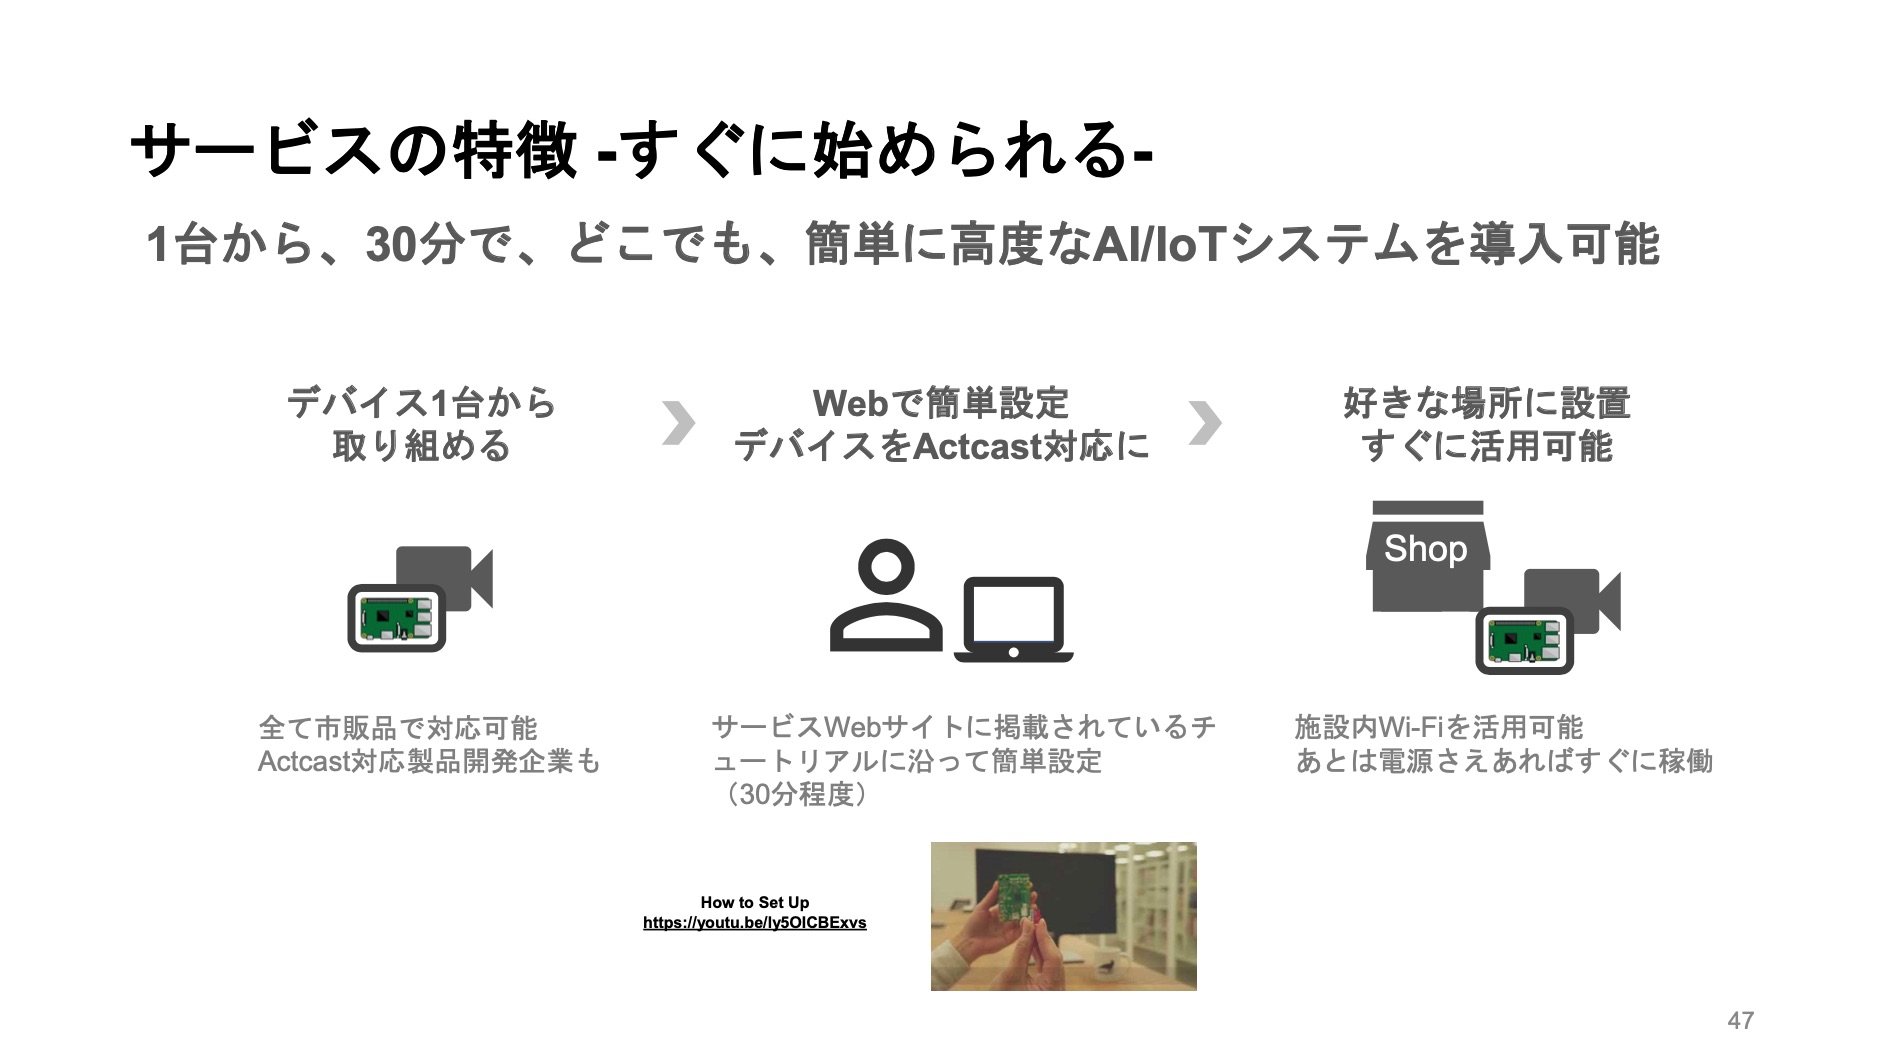 1日数十円から試せる Iot用aiアプリのapp Store 拡大へ Ideinが億円調達 Diamond Signal